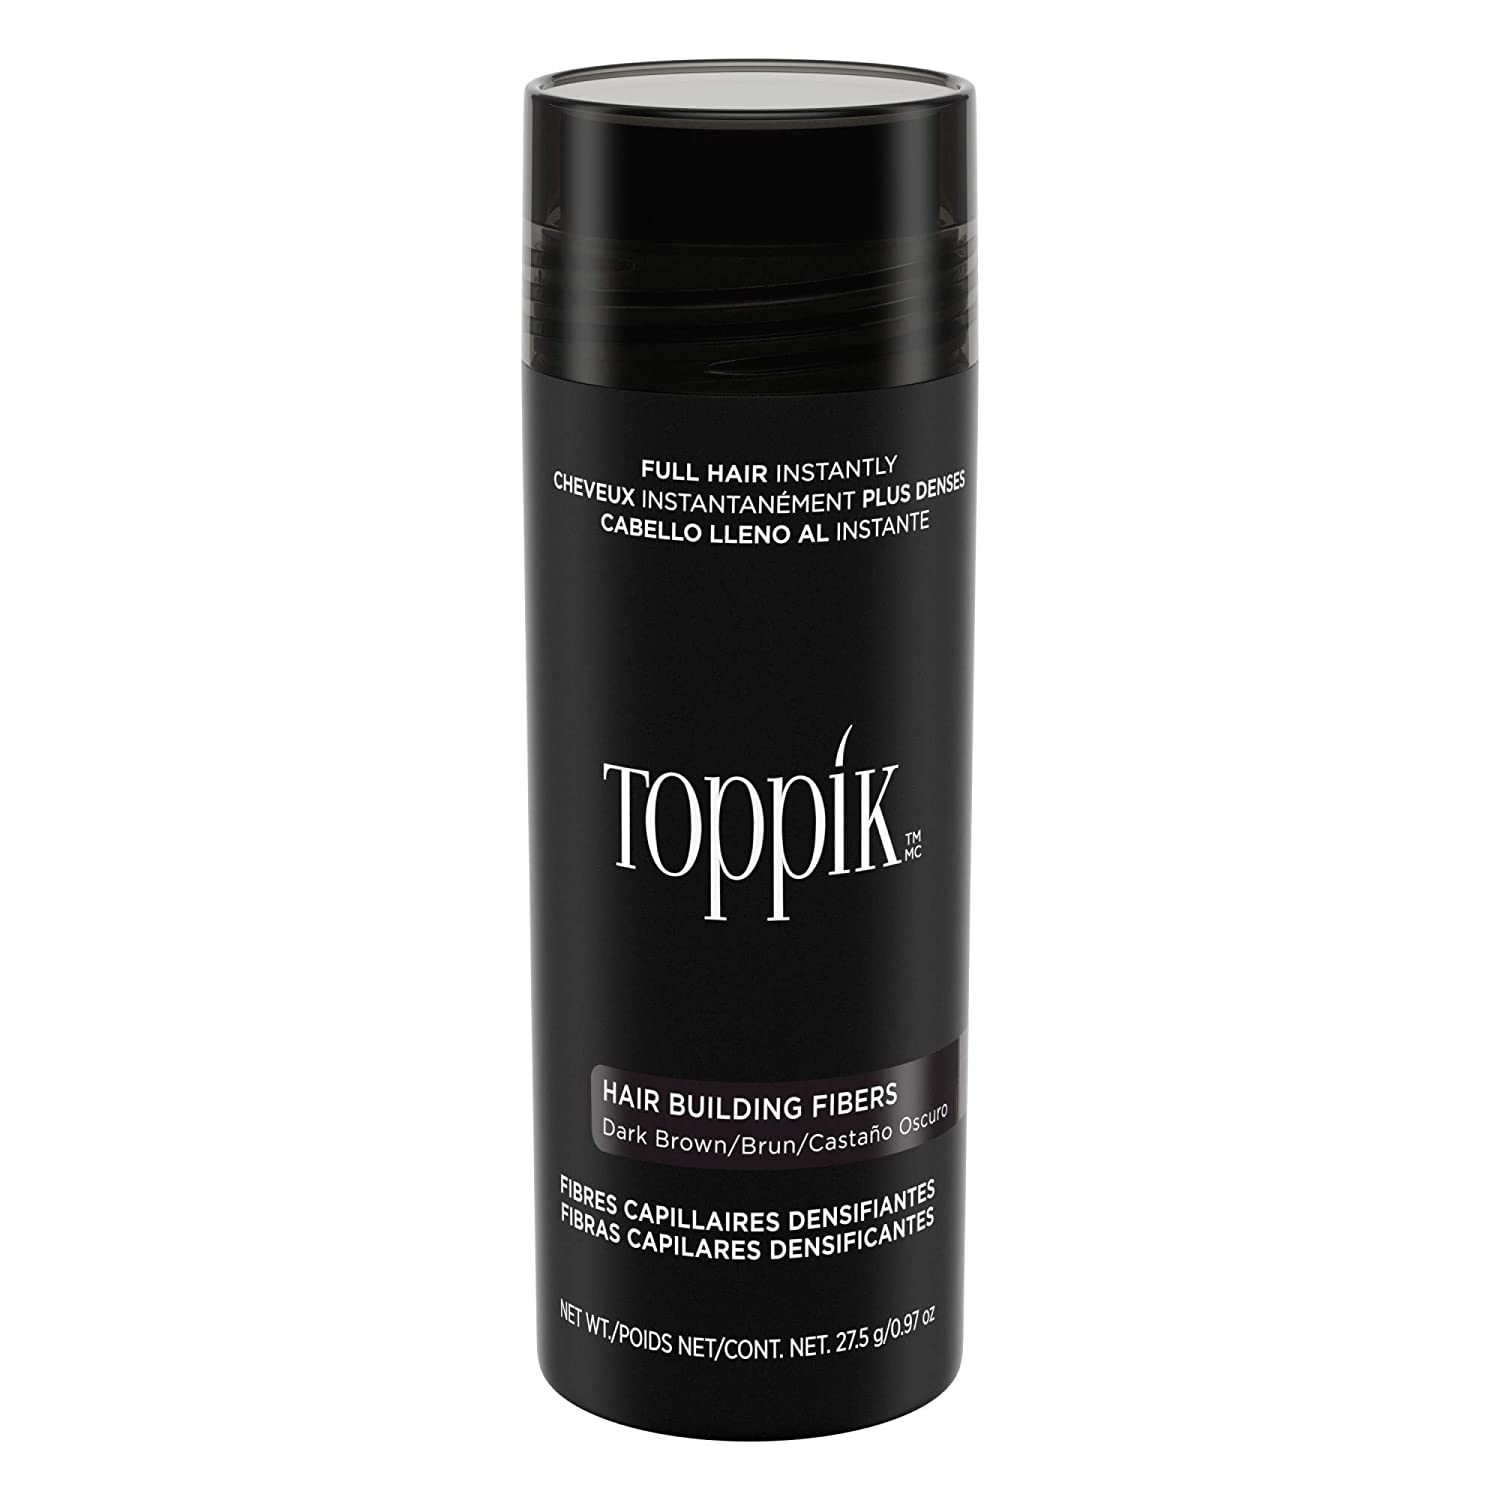 Toppik Hair Building Fibers 27.5g - Dark Brown